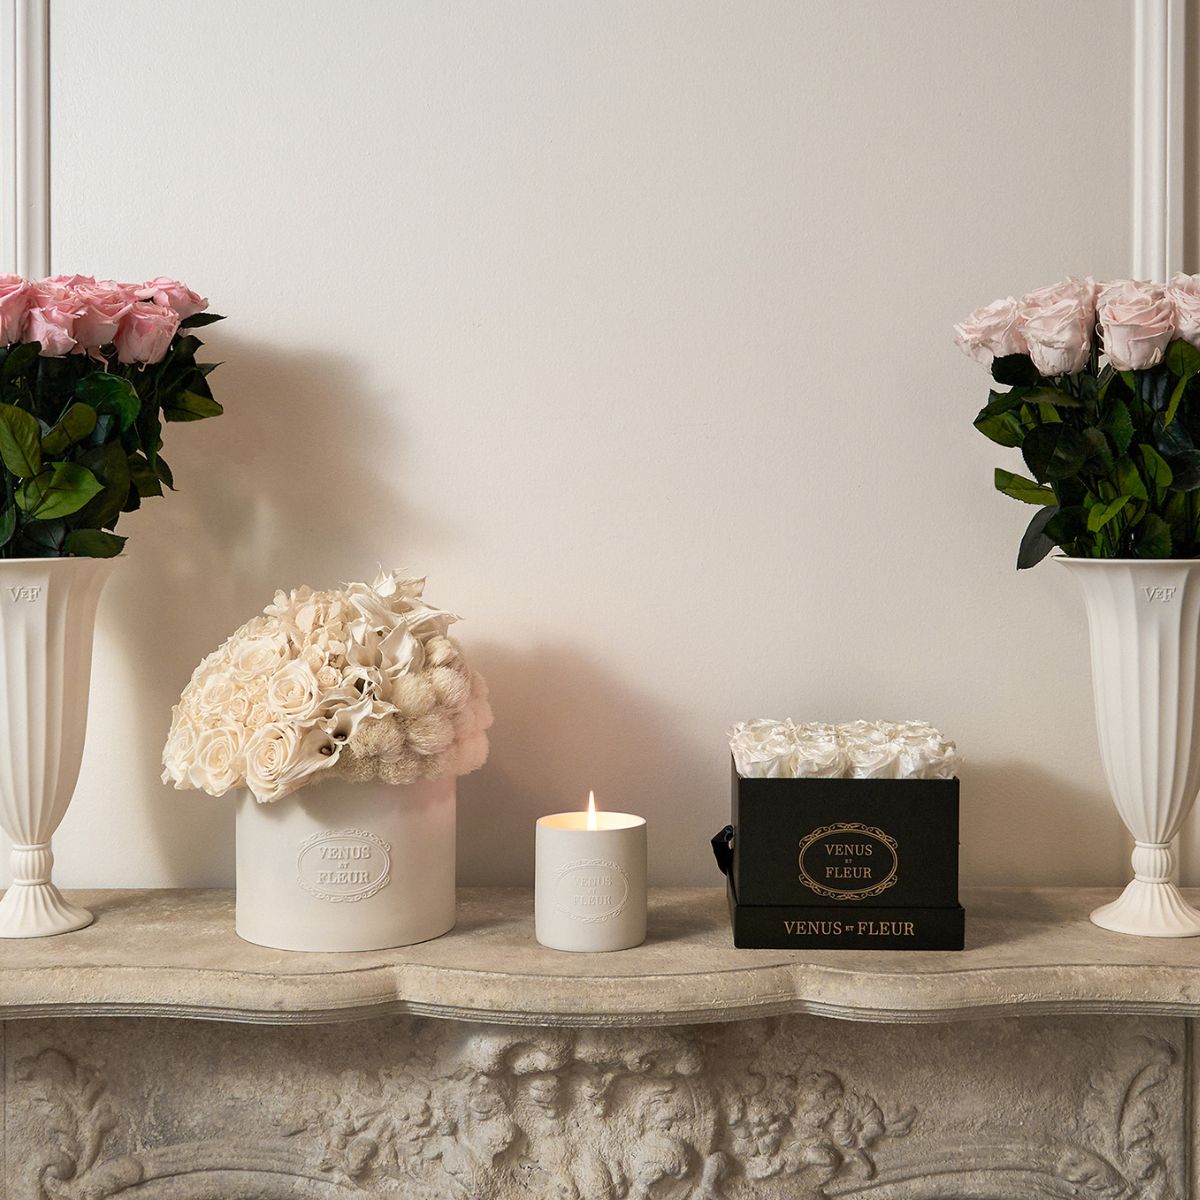 Decorative Vase and Décor Ideas for Your Space - Floral Home Decor – Venus  et Fleur